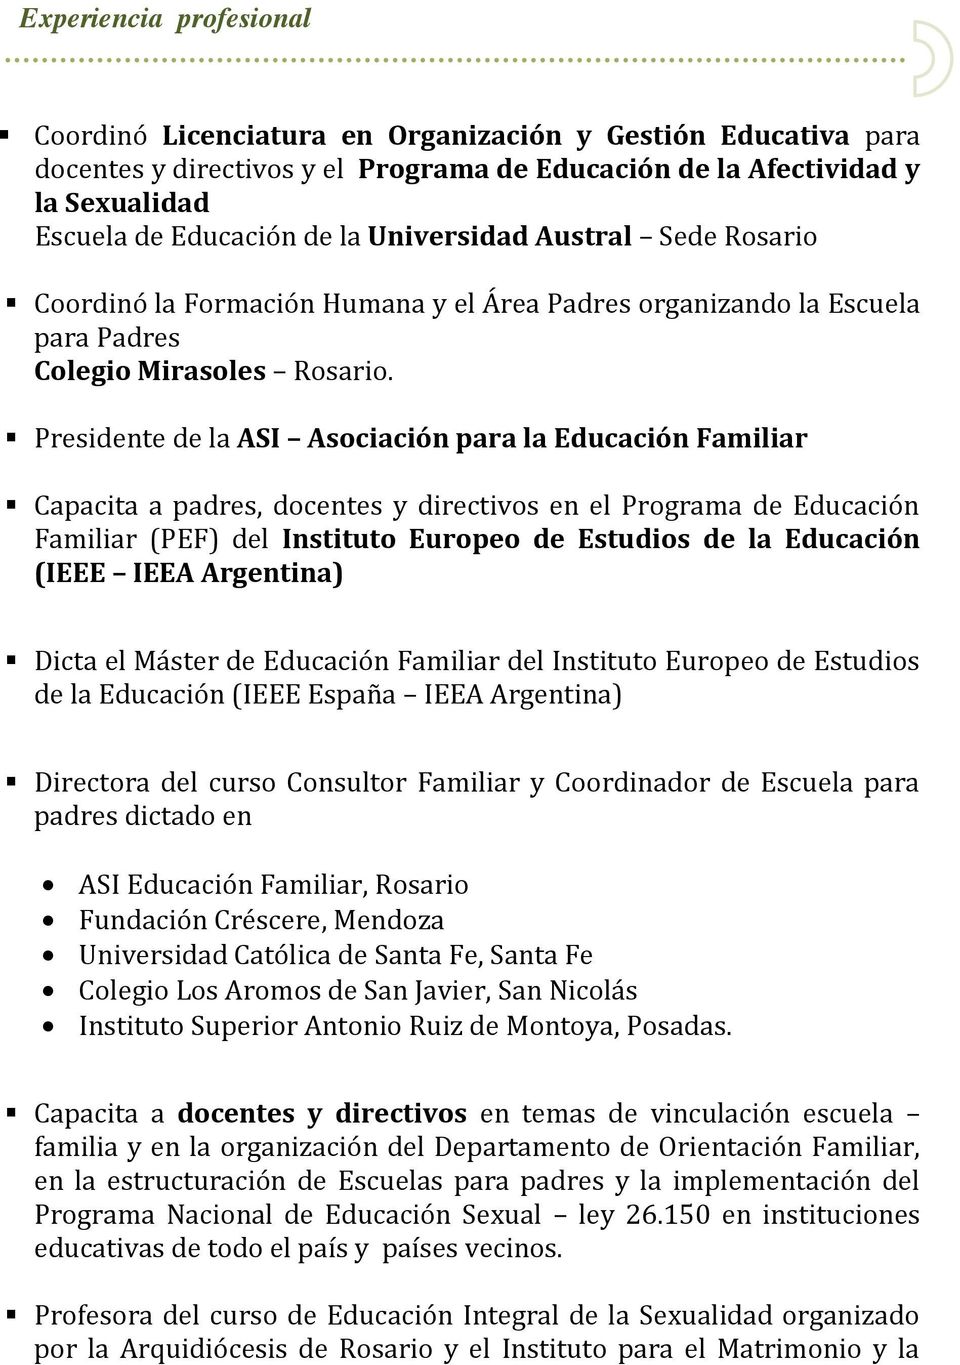 Presinte la ASI Asociación para la Educación Familiar Capacita a padres, docentes y directivos en el Programa Educación Familiar (PEF) l Instituto Europeo Estudios la Educación (IEEE IEEA Argentina)